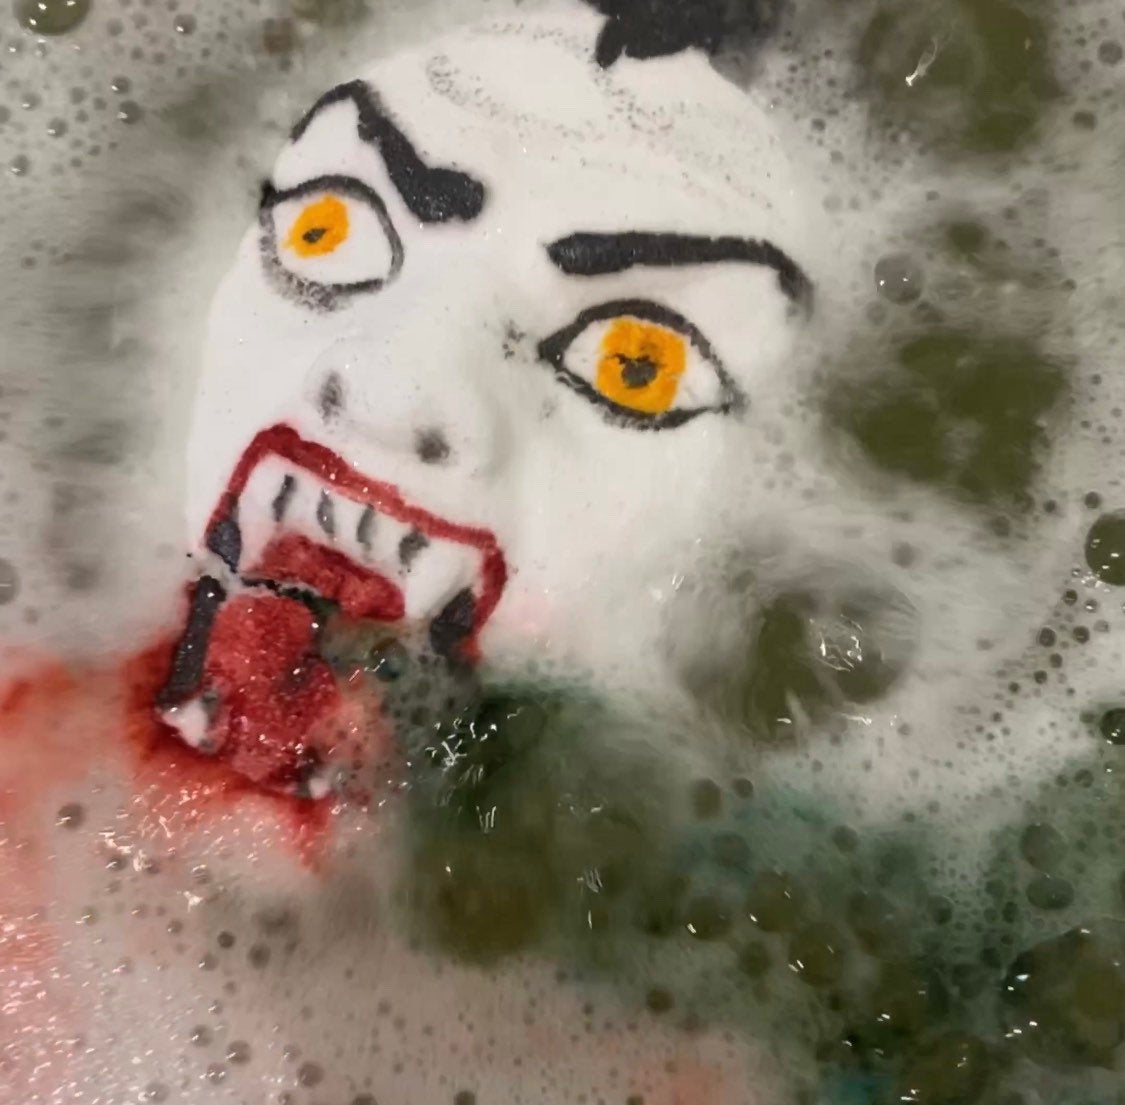 Scary Horror Vampire Bath Bomb - Melting vampire bloody bath bomb